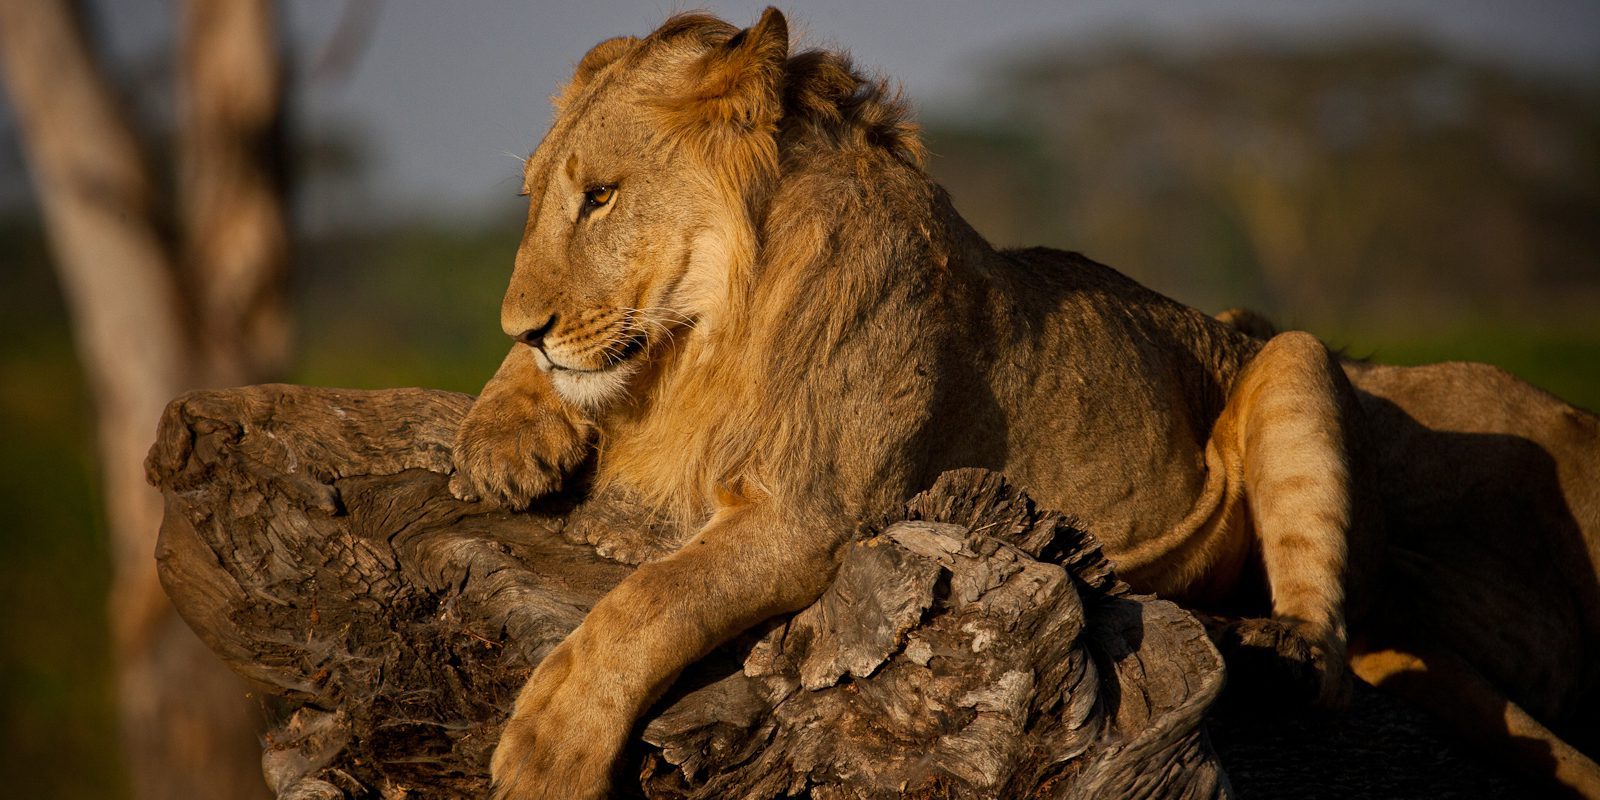 Elephant Conservation Safari to Kenya, Lewa Lion